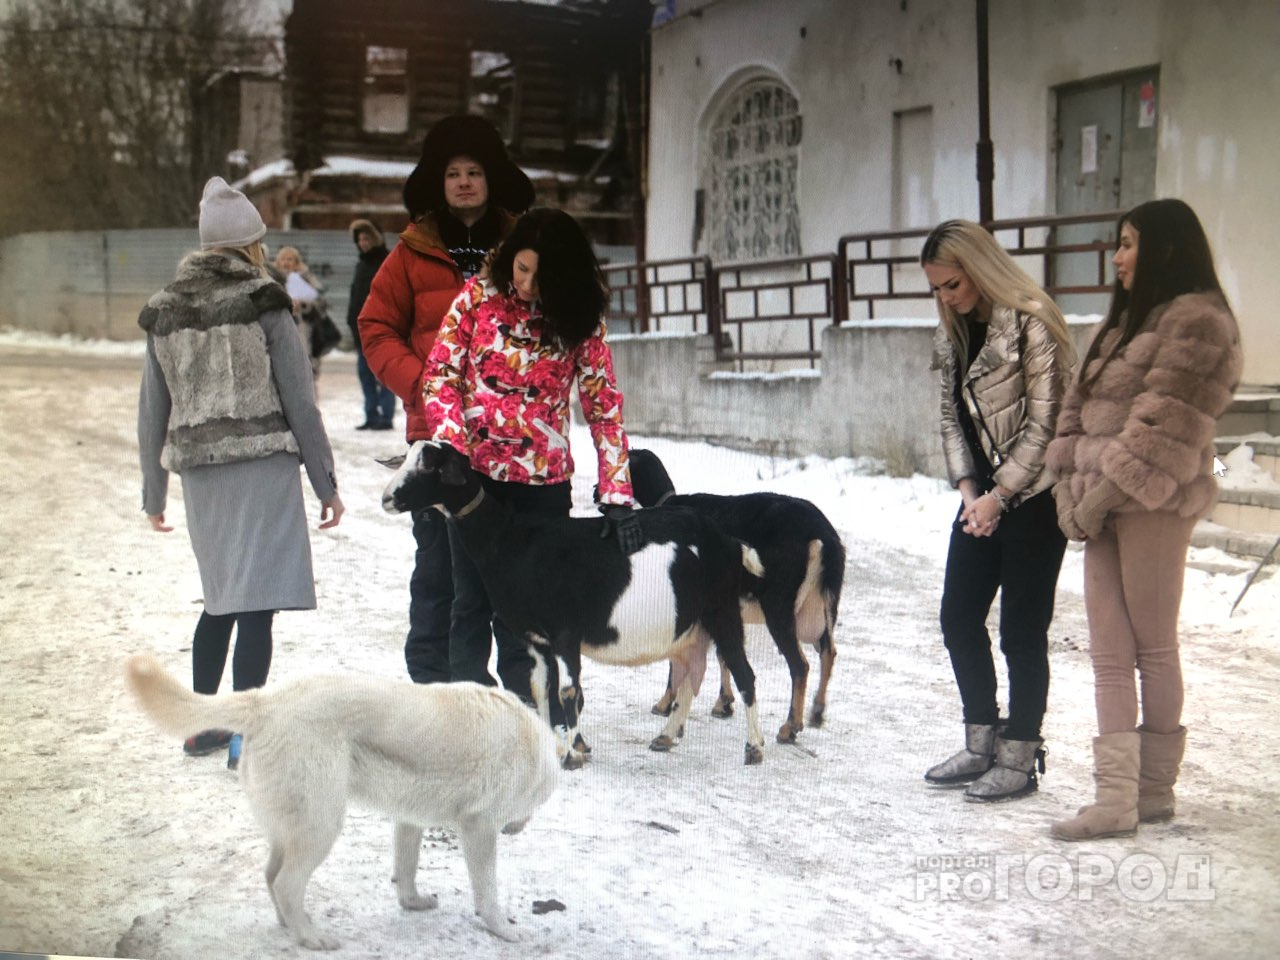 Новости шоу-биза: участницы проекта "Любовь по правилам и без" очаровывают коз